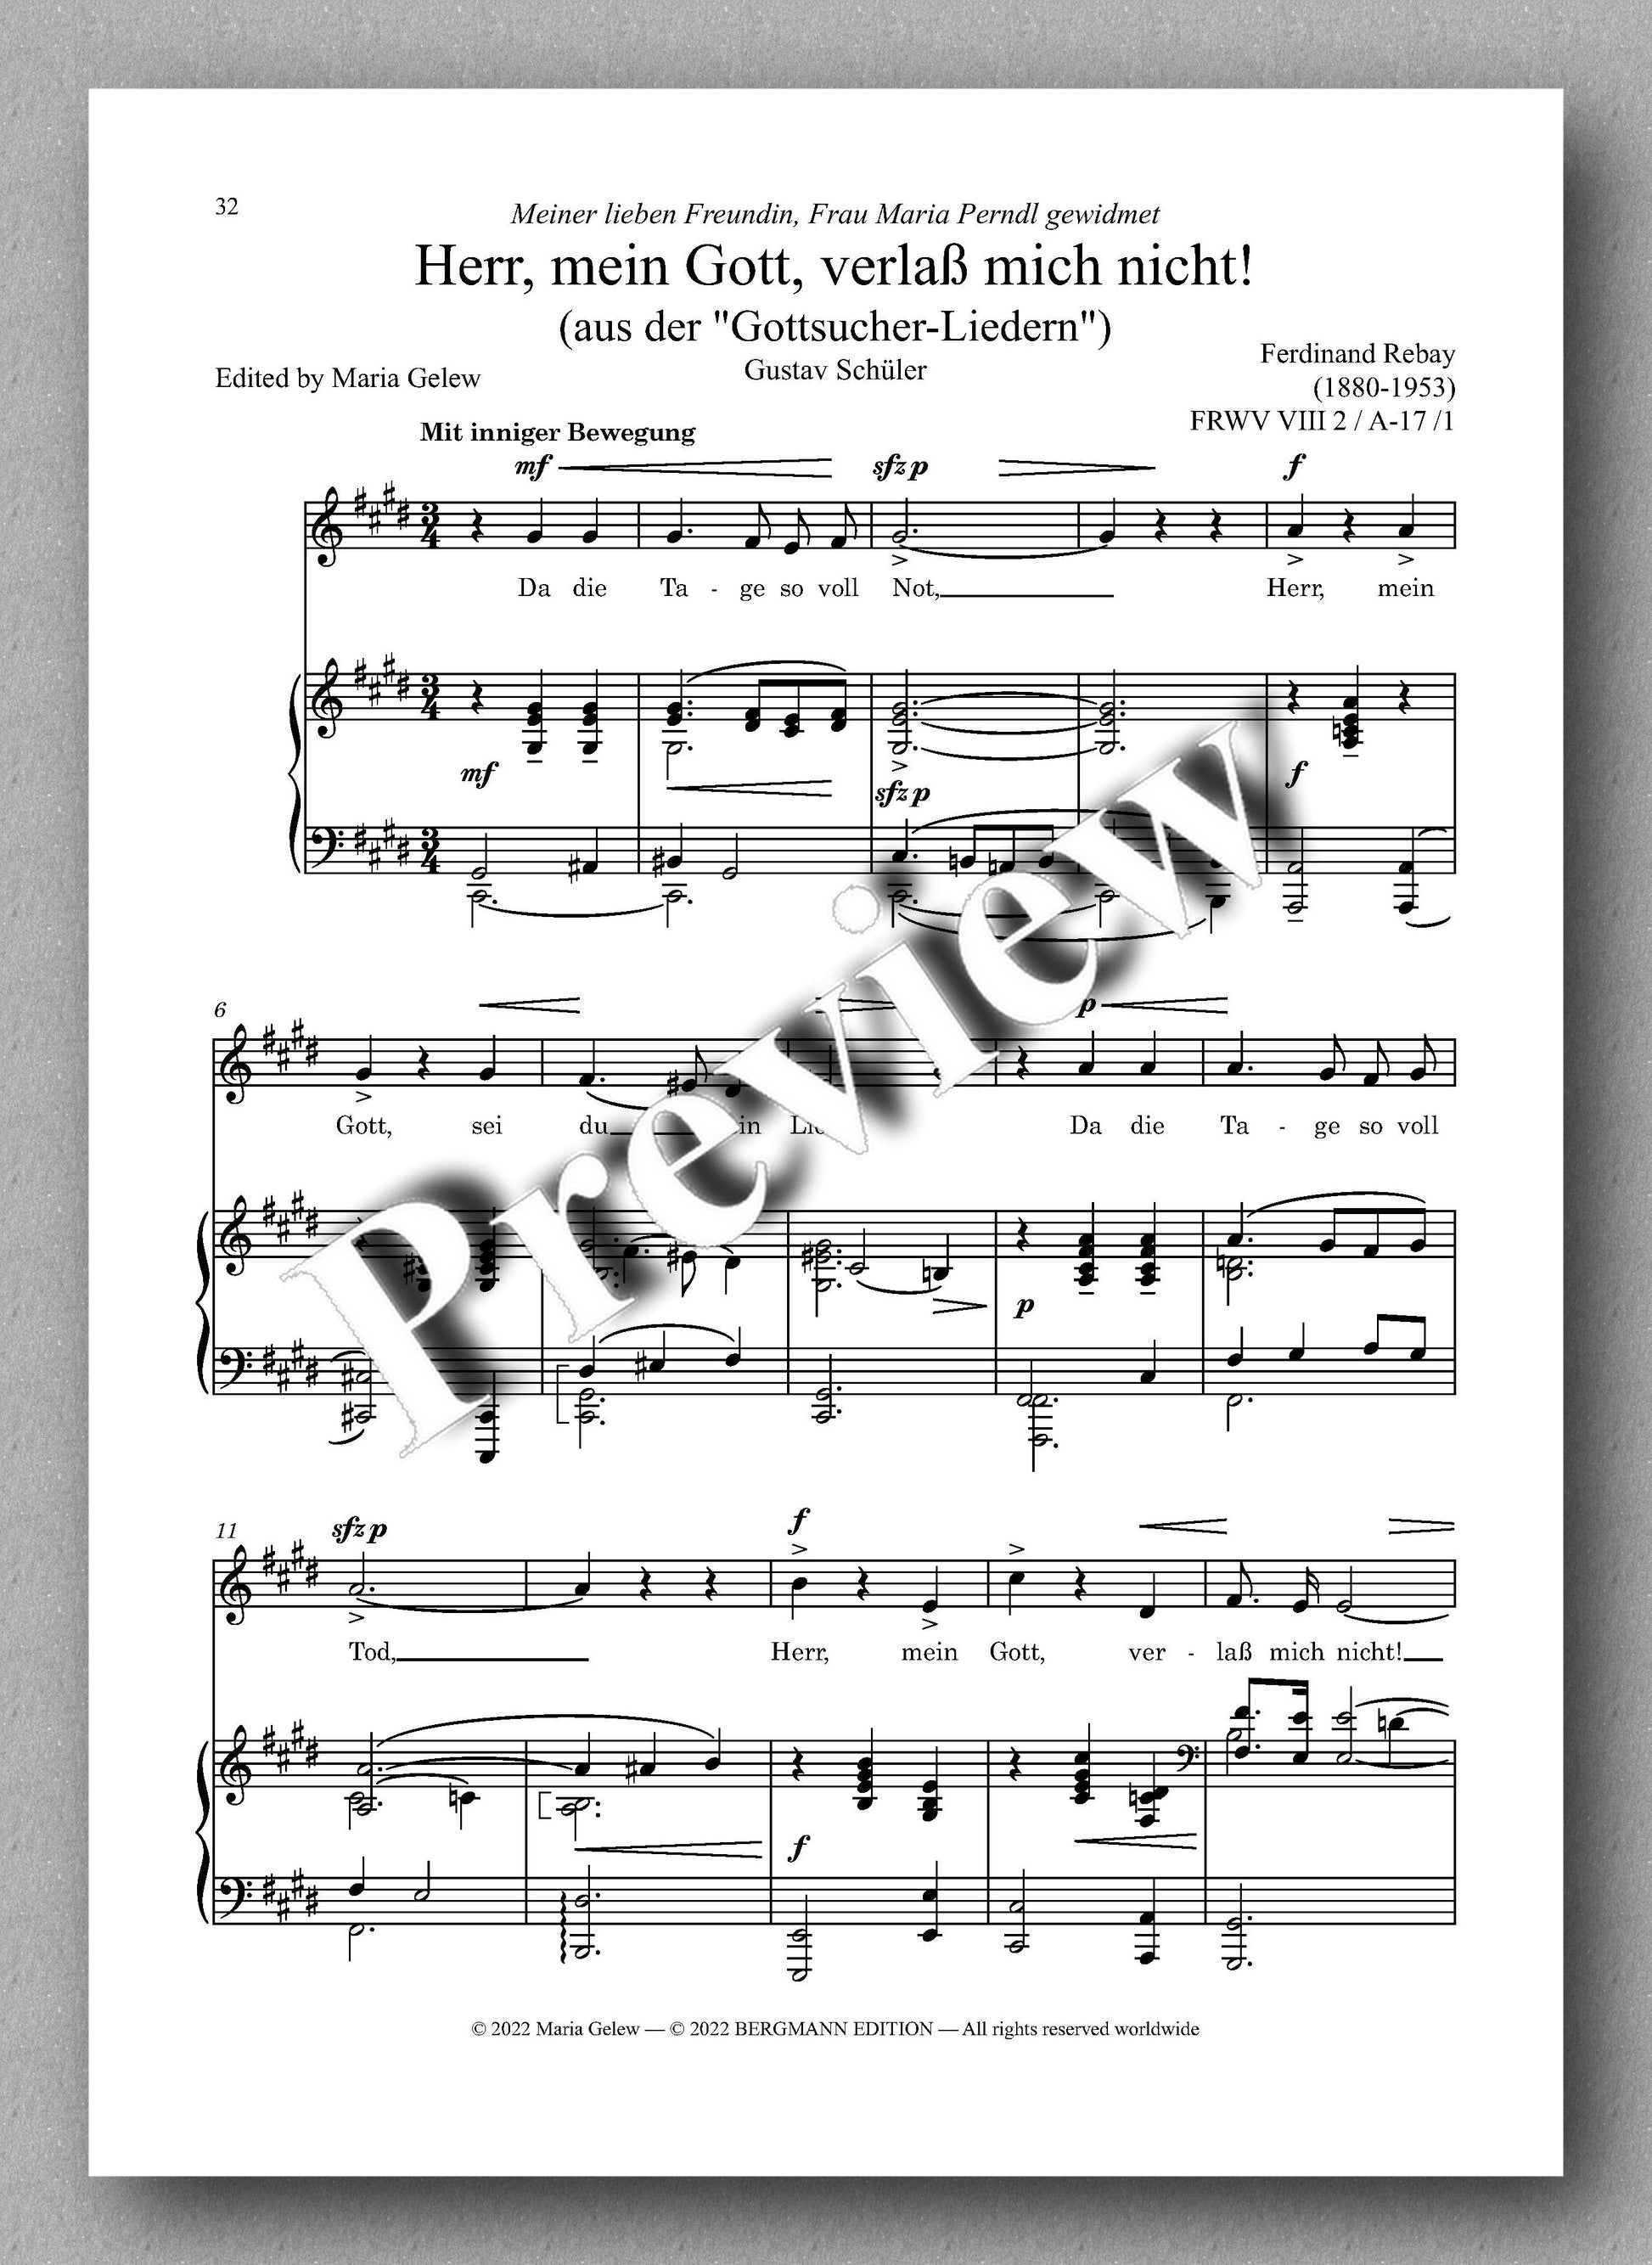 Ferdinand Rebay, Lieder nach Gedichten von Wolfgang Madjera und Gustav Schüler - preview of the music score 3